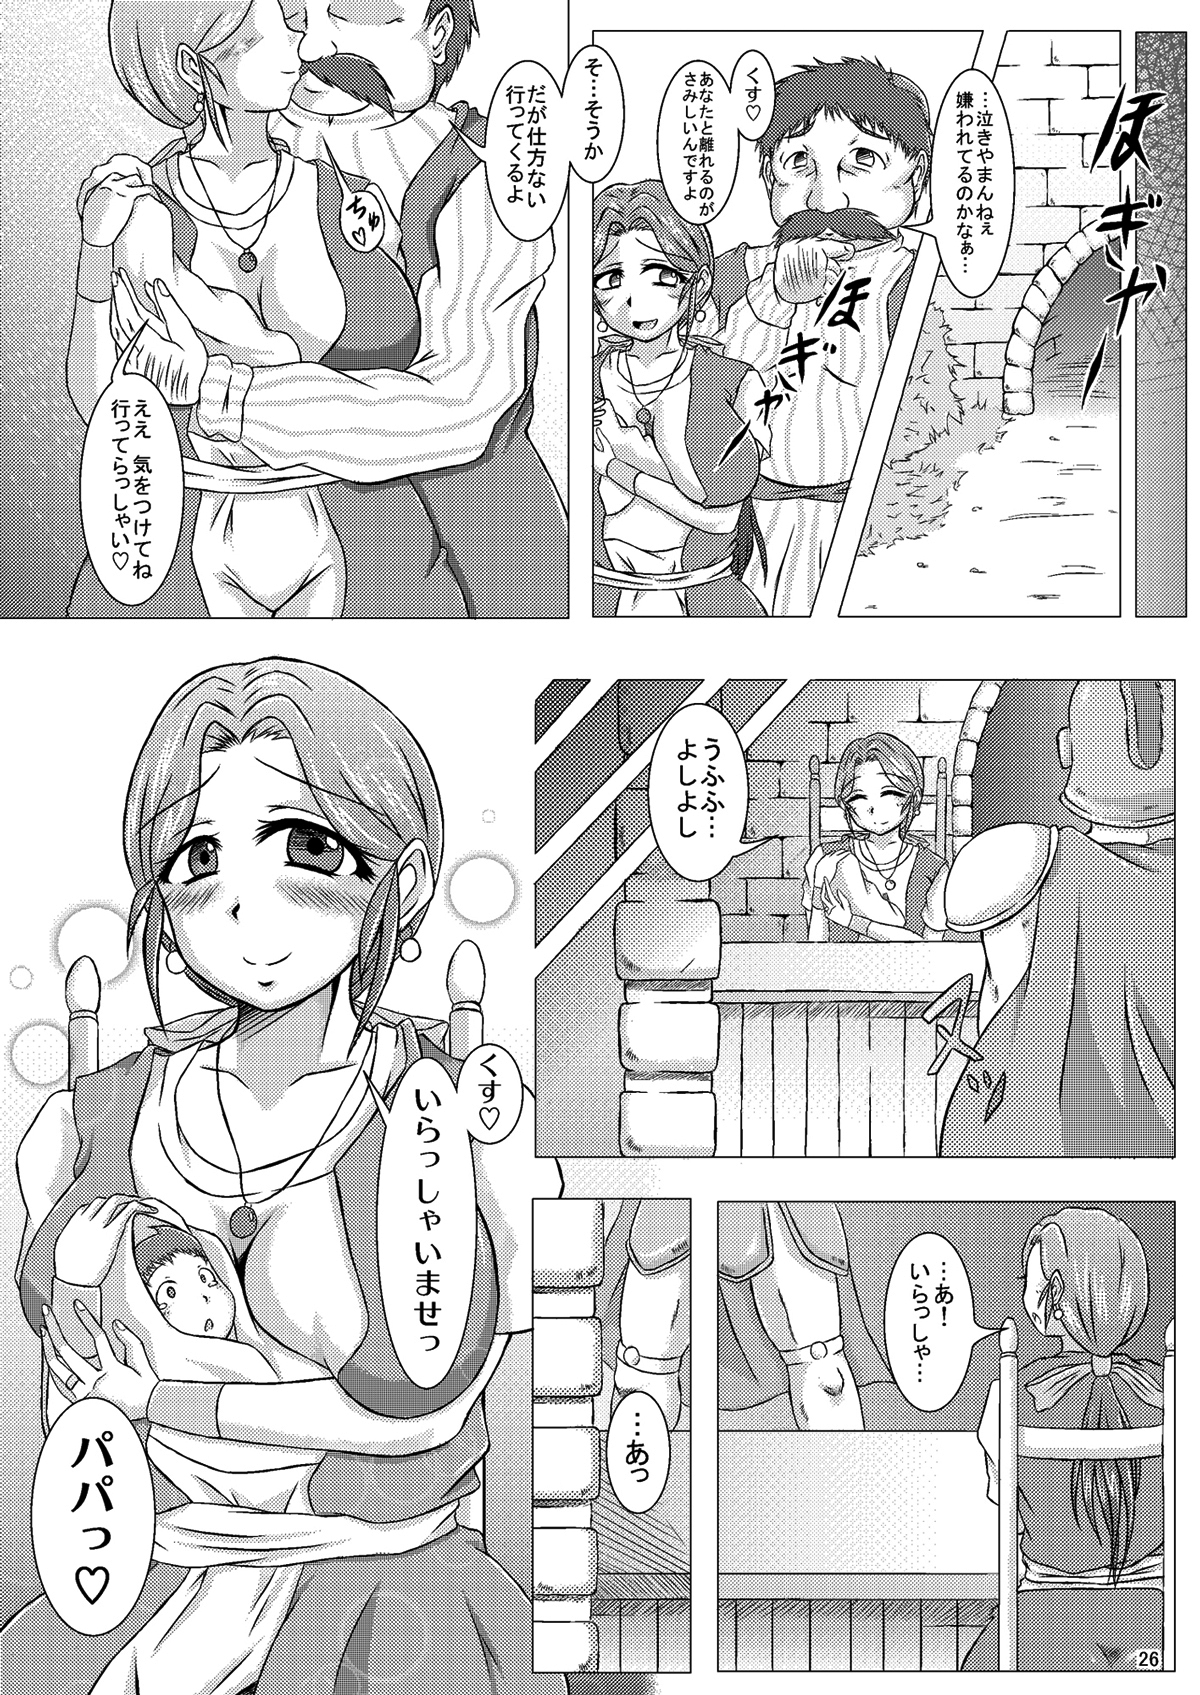 (CT14) [Pintsize (Yakusho)] Torneko-fujin Nene (35)  Danna wa Shiranai Yoru no Hustle Eigyou (Dragon Quest IV) page 26 full